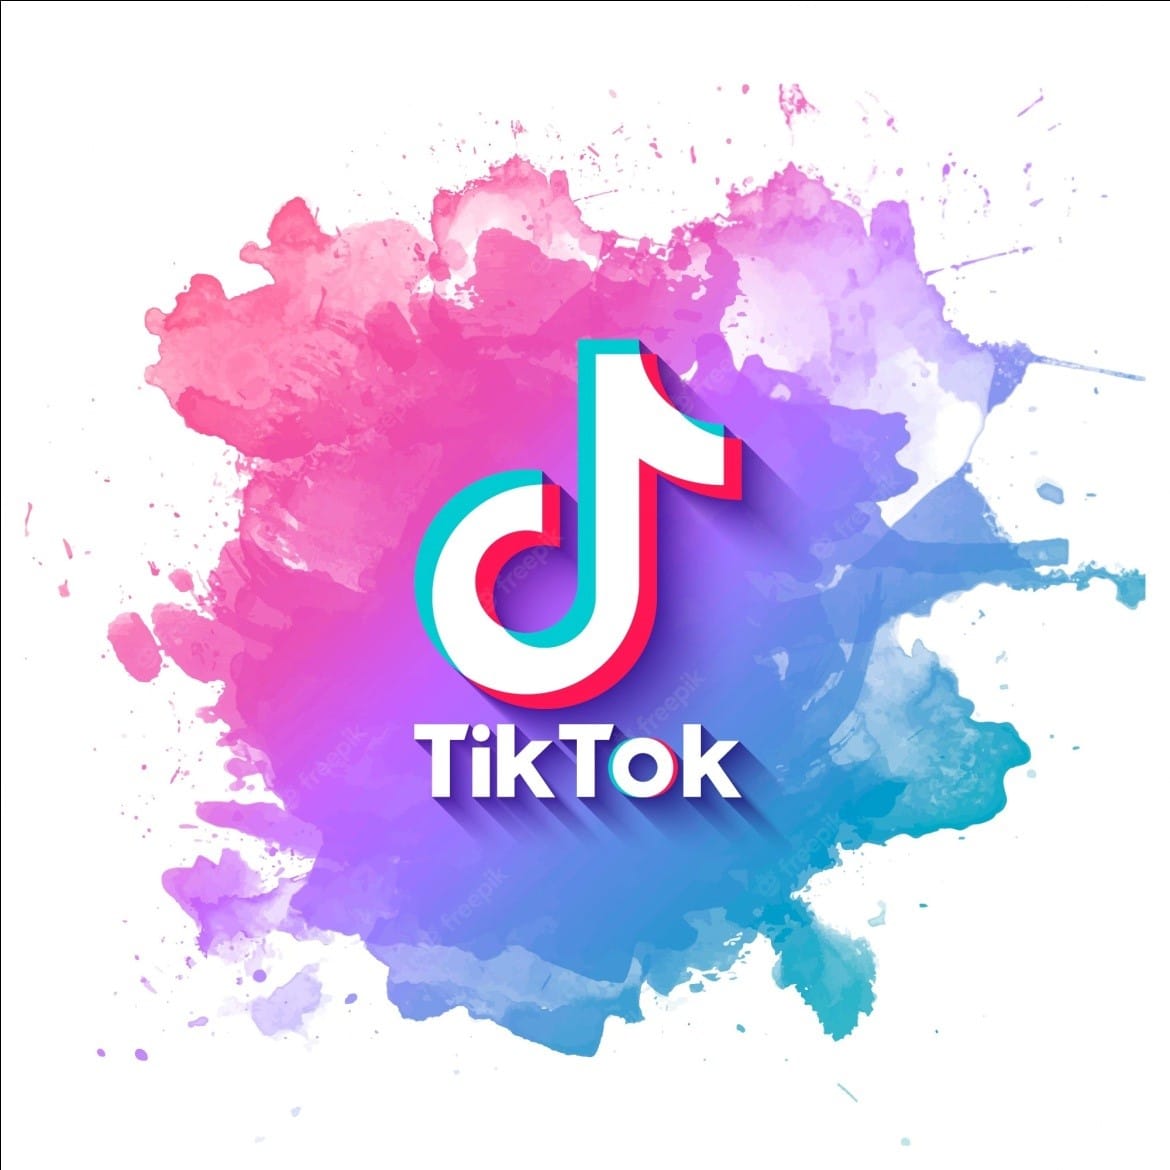 Imagen ilustrativa del logo de TikTok. Imagen tomada vía internet